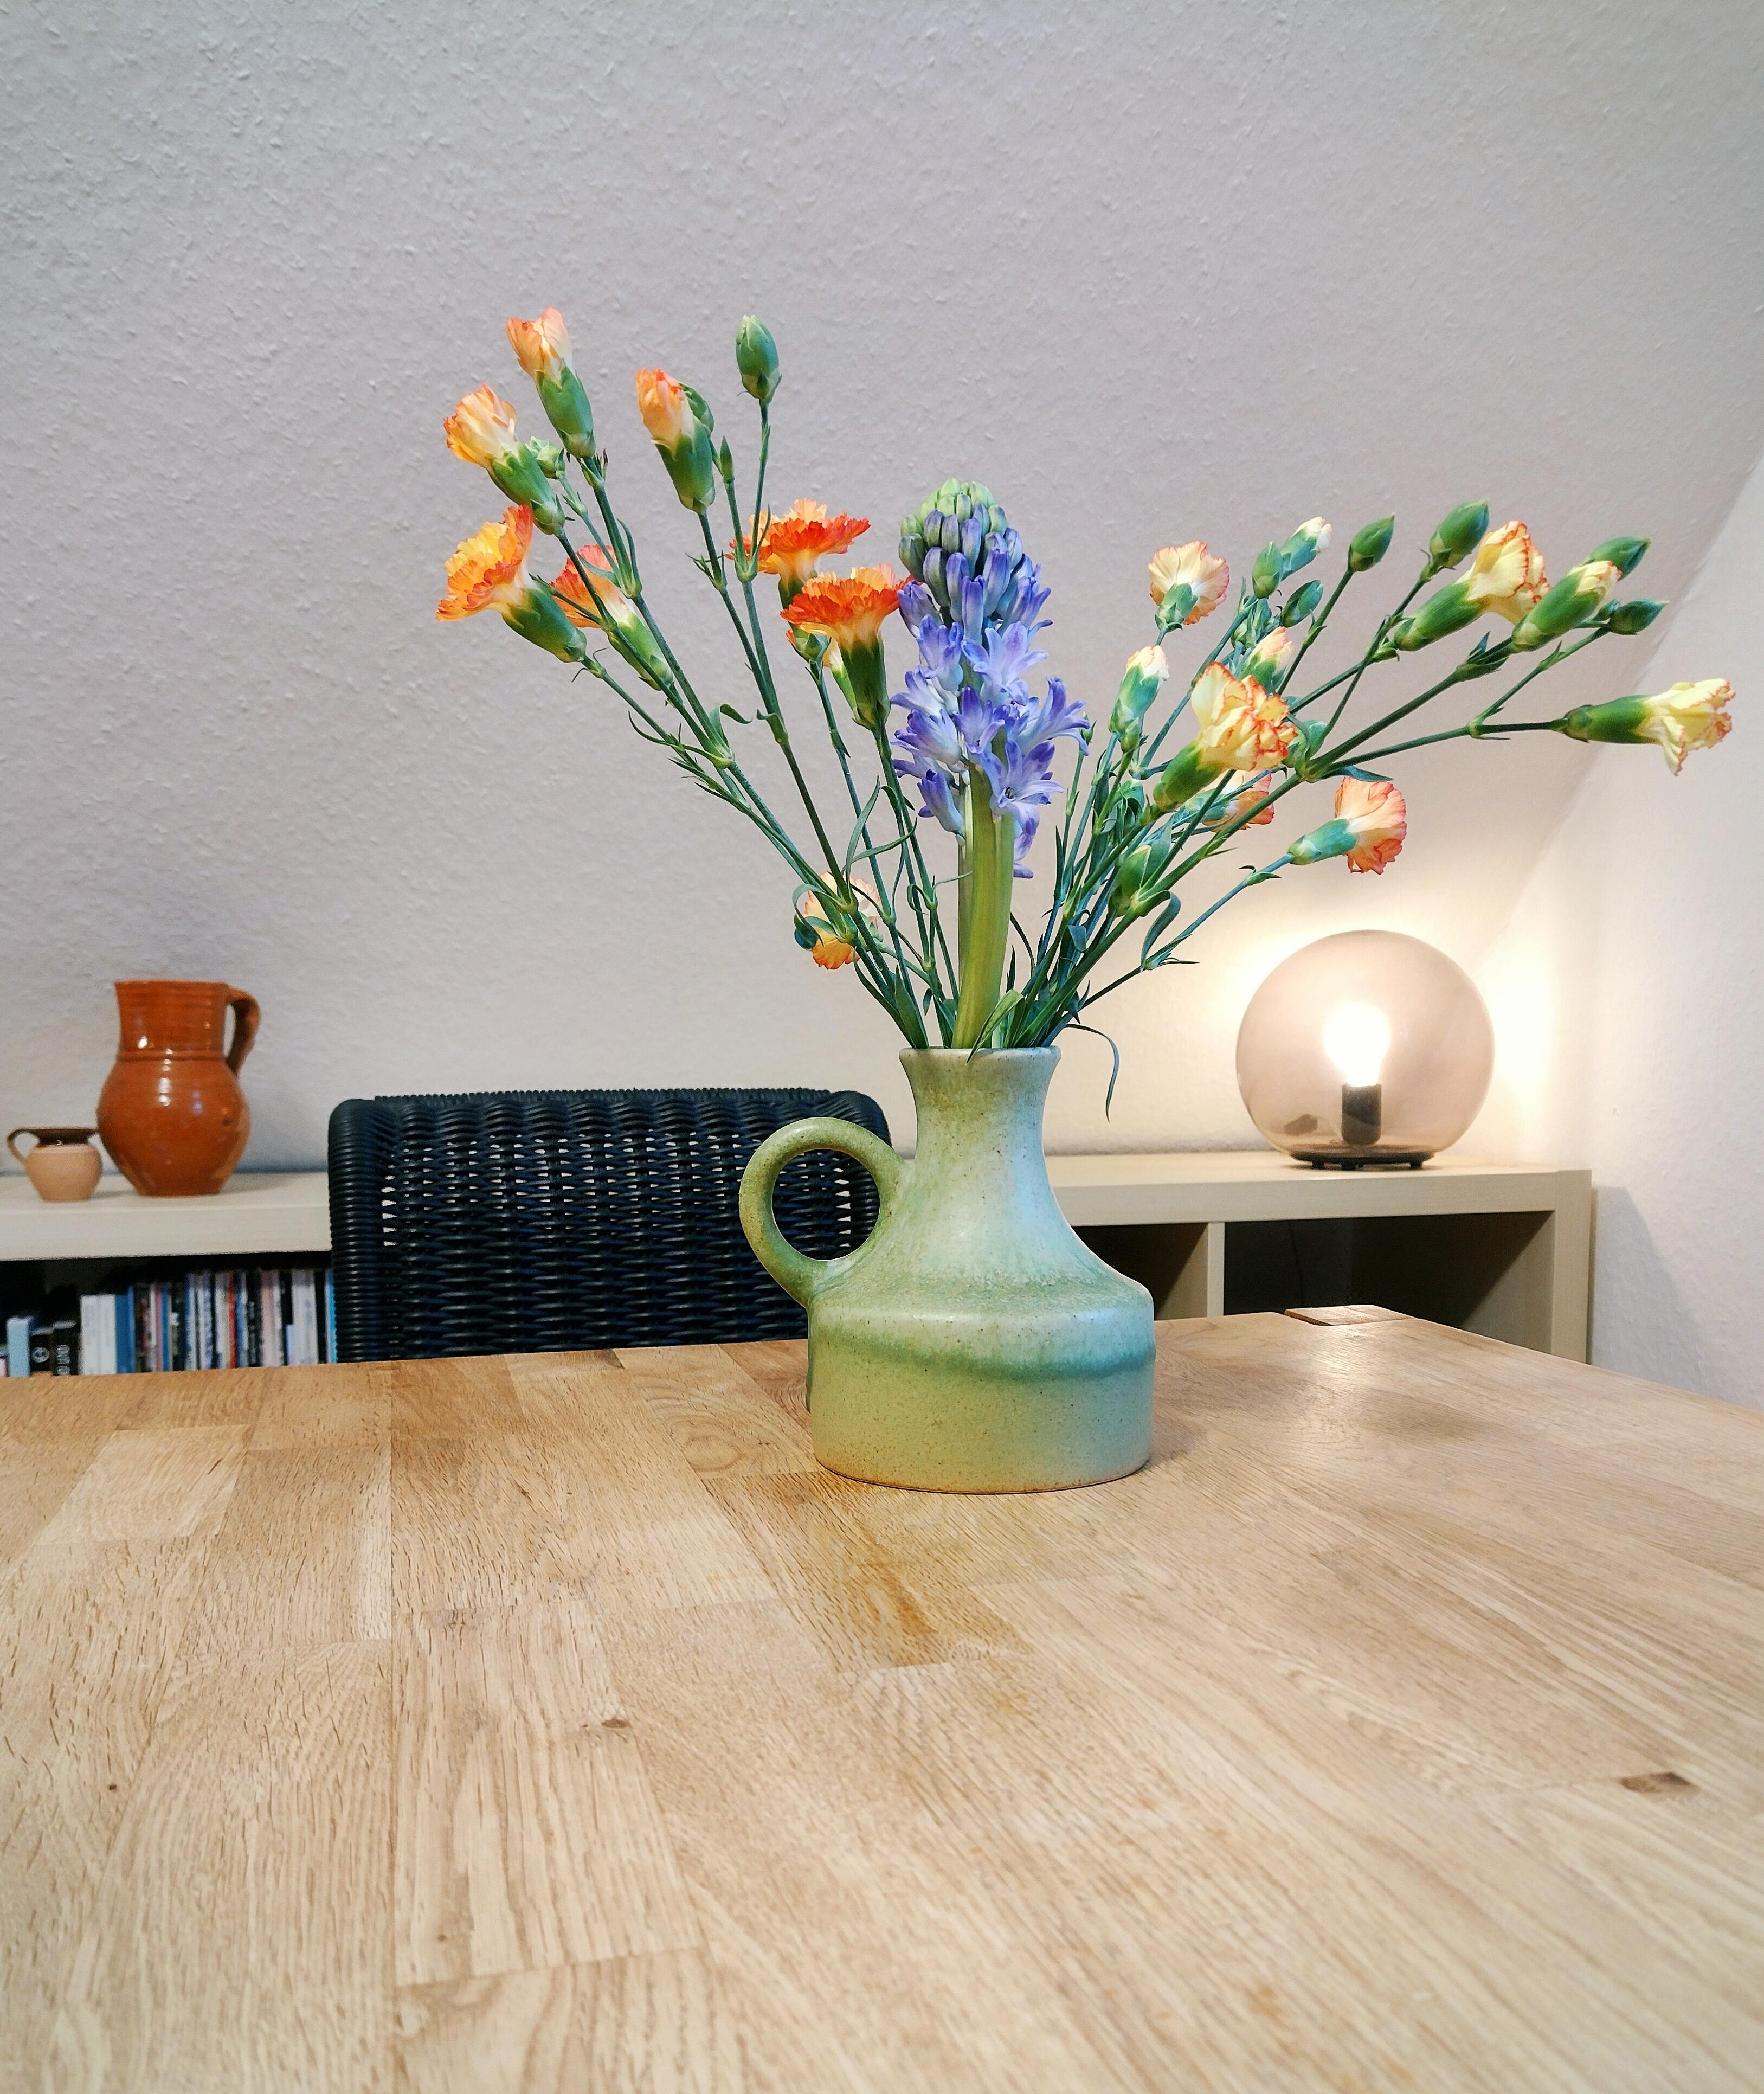 Fresh flower friday 💚
#frischeblumen #vintagevase #kugellampe #esstisch #grünliebe #keramikvase #keramikliebe #dachschräge